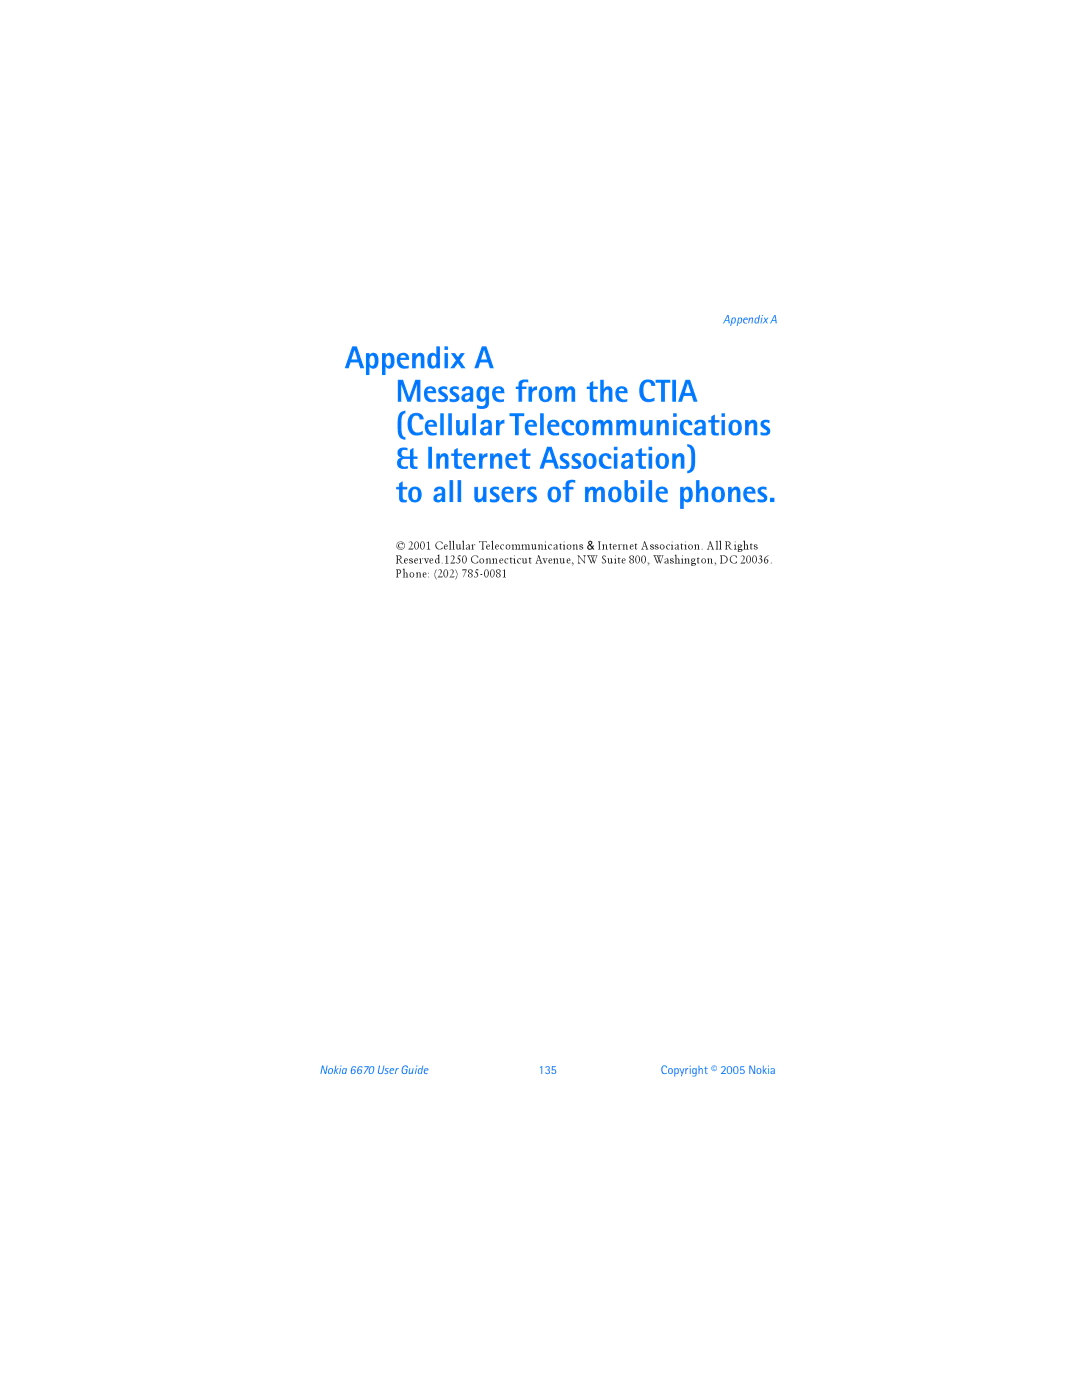 Nokia manual Appendix a, Nokia 6670 User Guide 135 